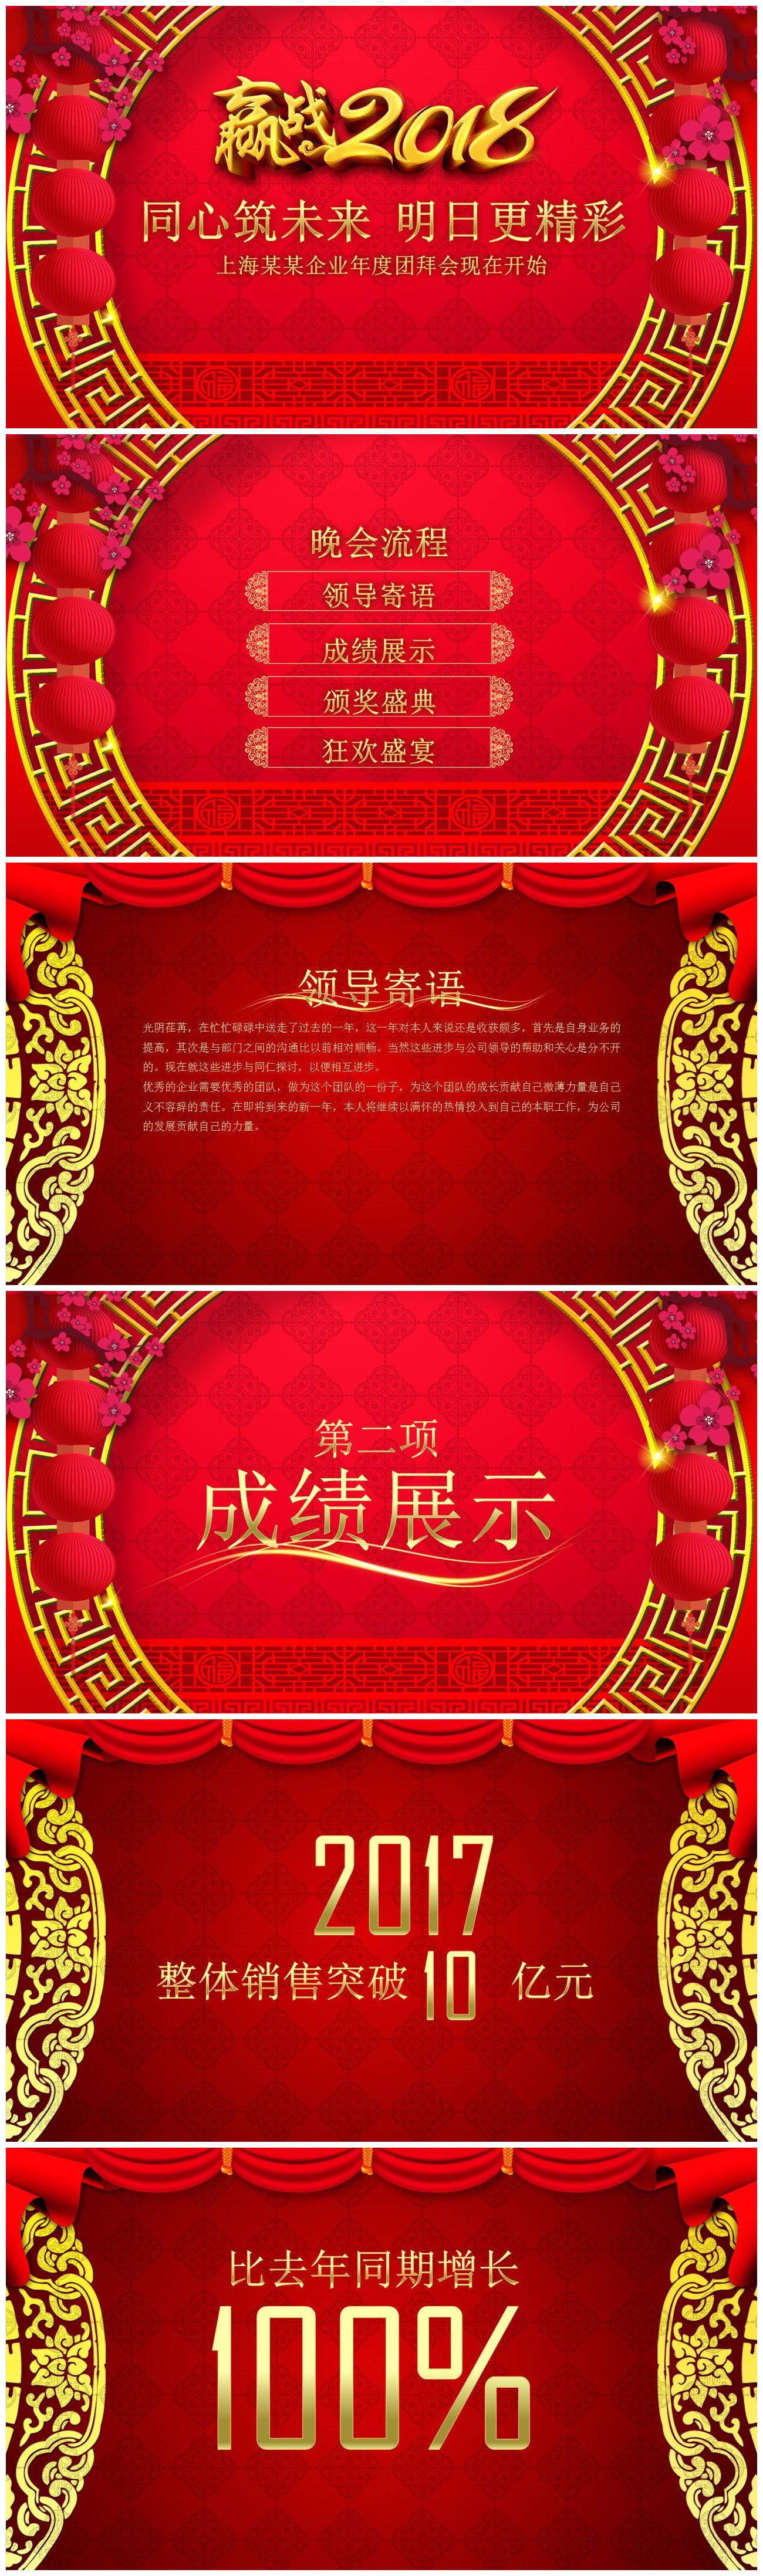 中国红企业年度团拜会晚会ppt模板-聚给网